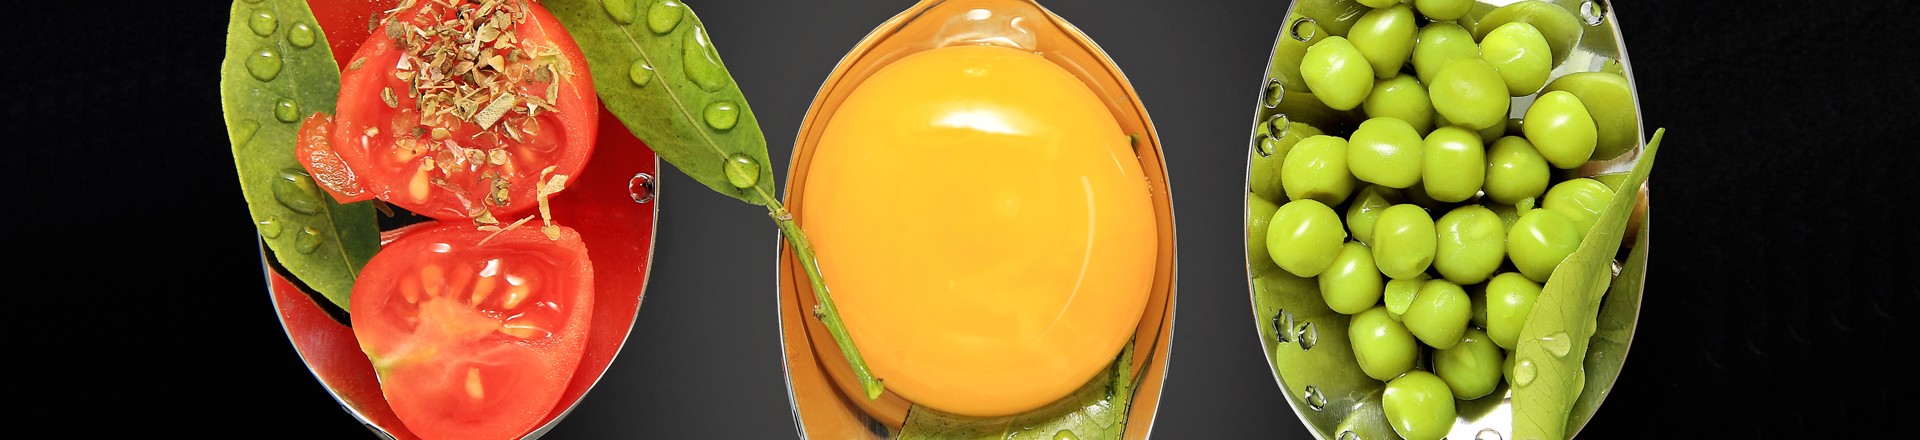 egg yolk on a spoon, cholesterol